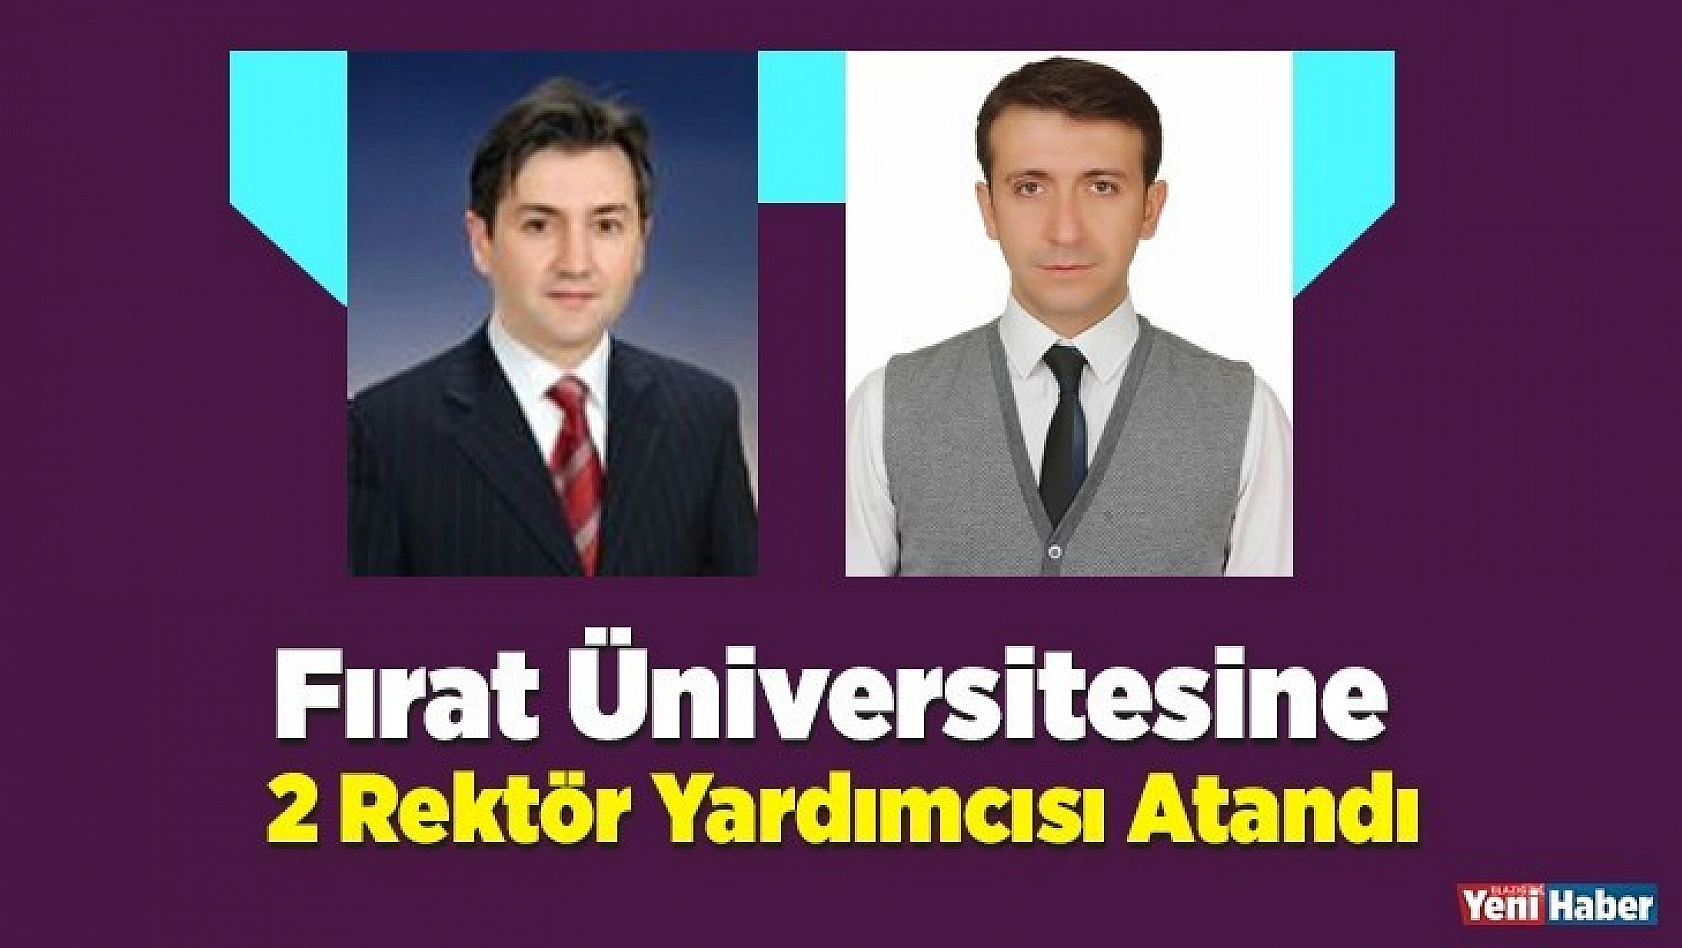 Fırat Üniversitesine 2 Rektör Yardımcısı Atandı